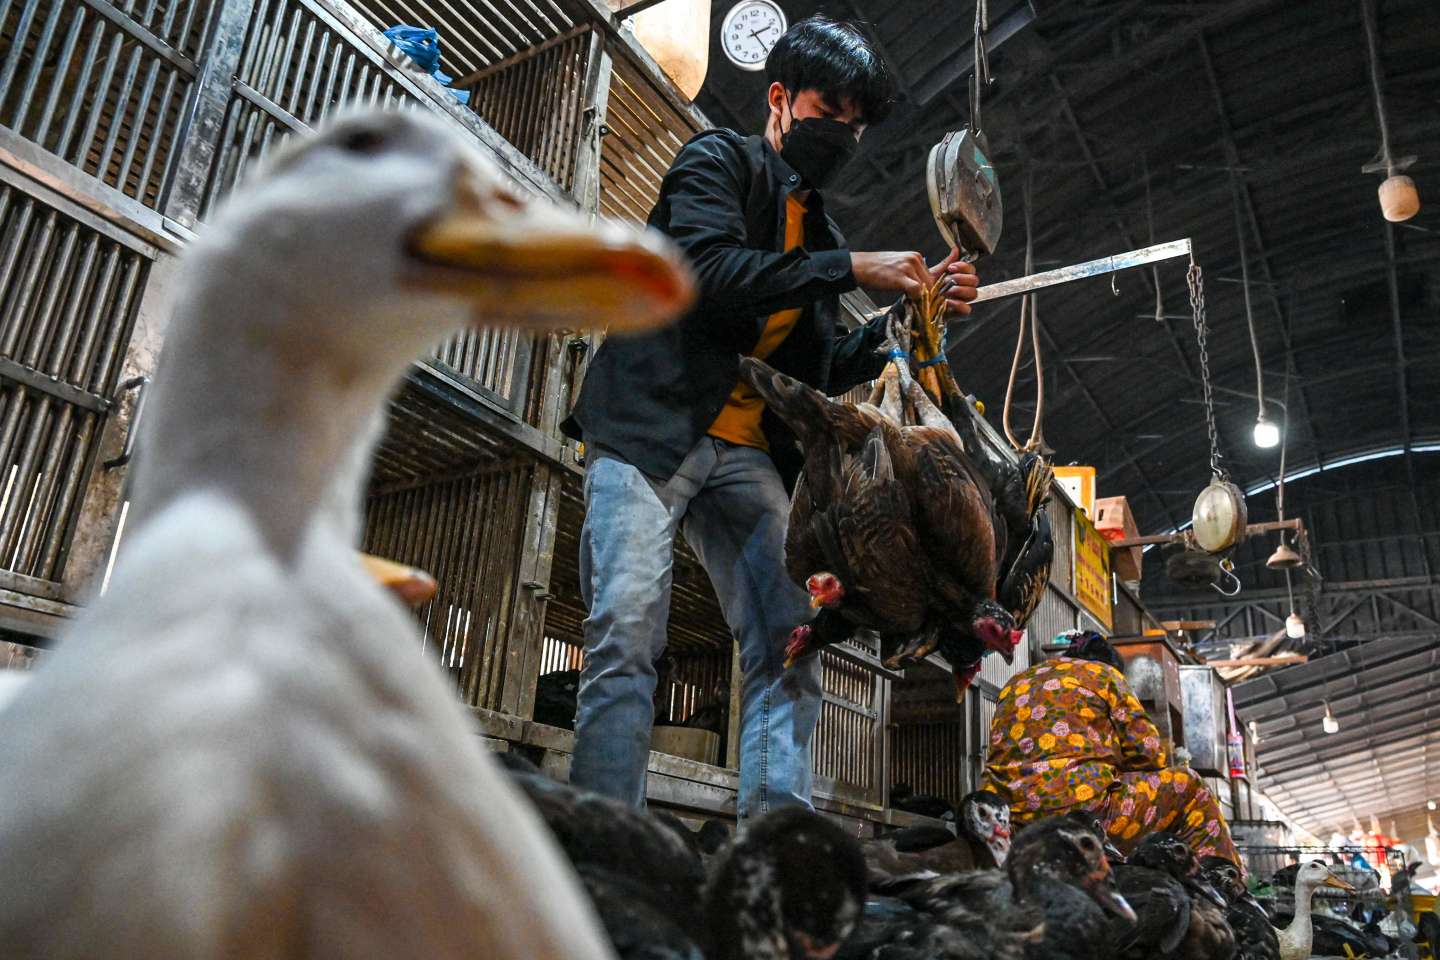 Grippe aviaire : le Cambodge écarte l’hypothèse d’une transmission entre êtres humains